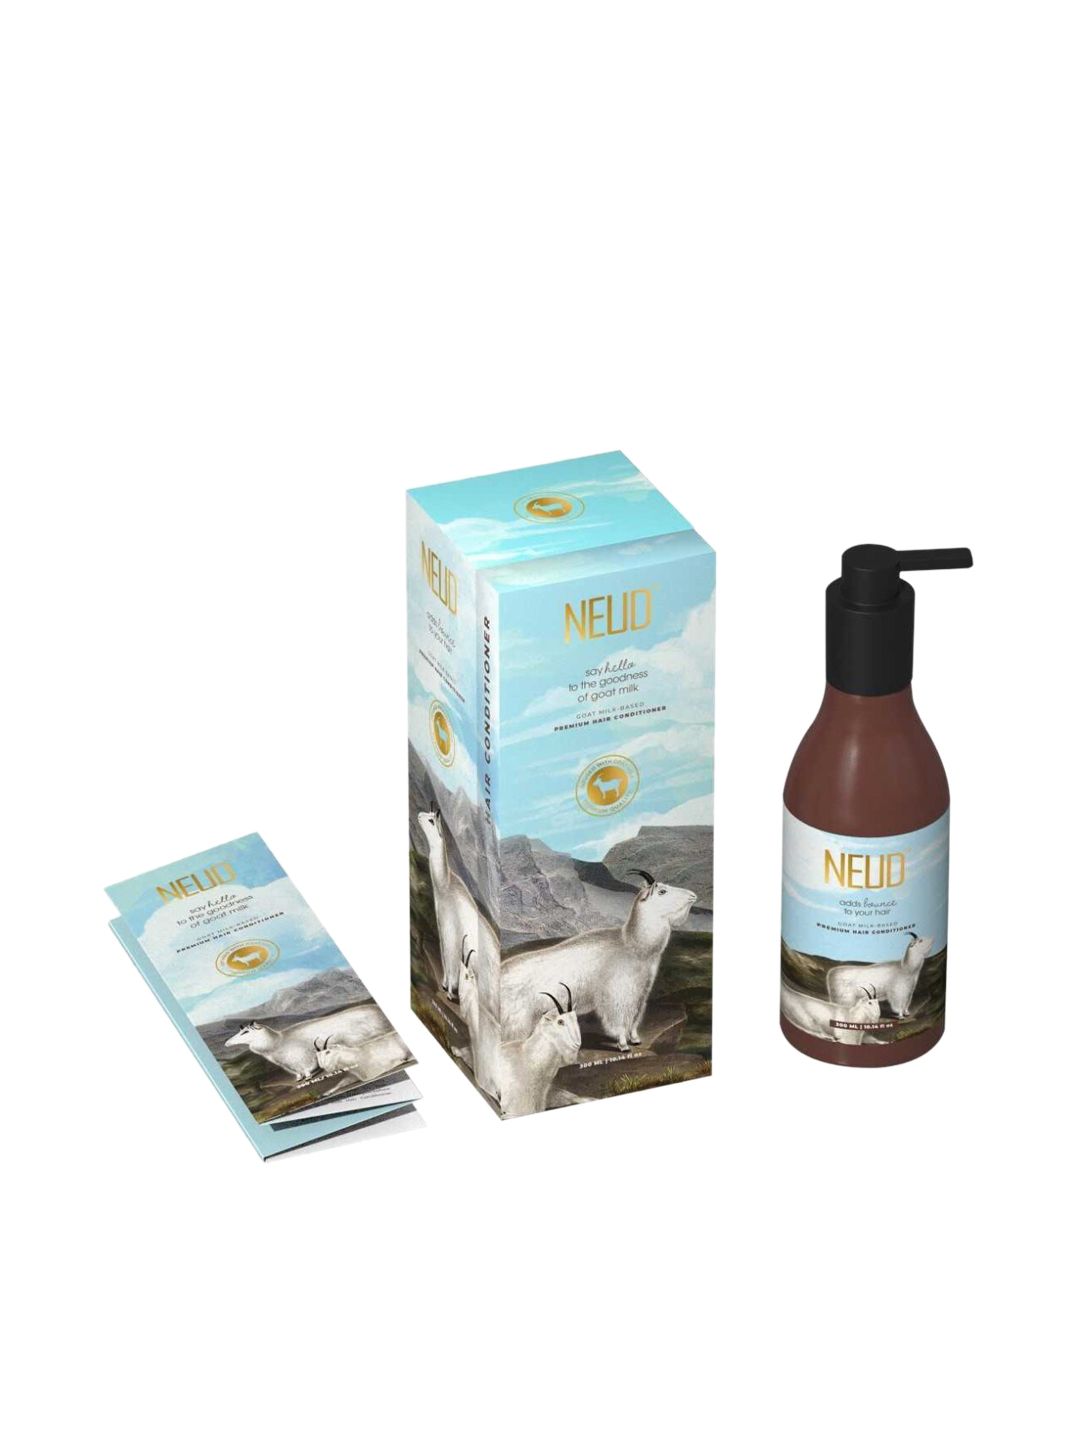 NEUD Goat Milk-Based Premium Hair Conditioner 300 ml Price in India